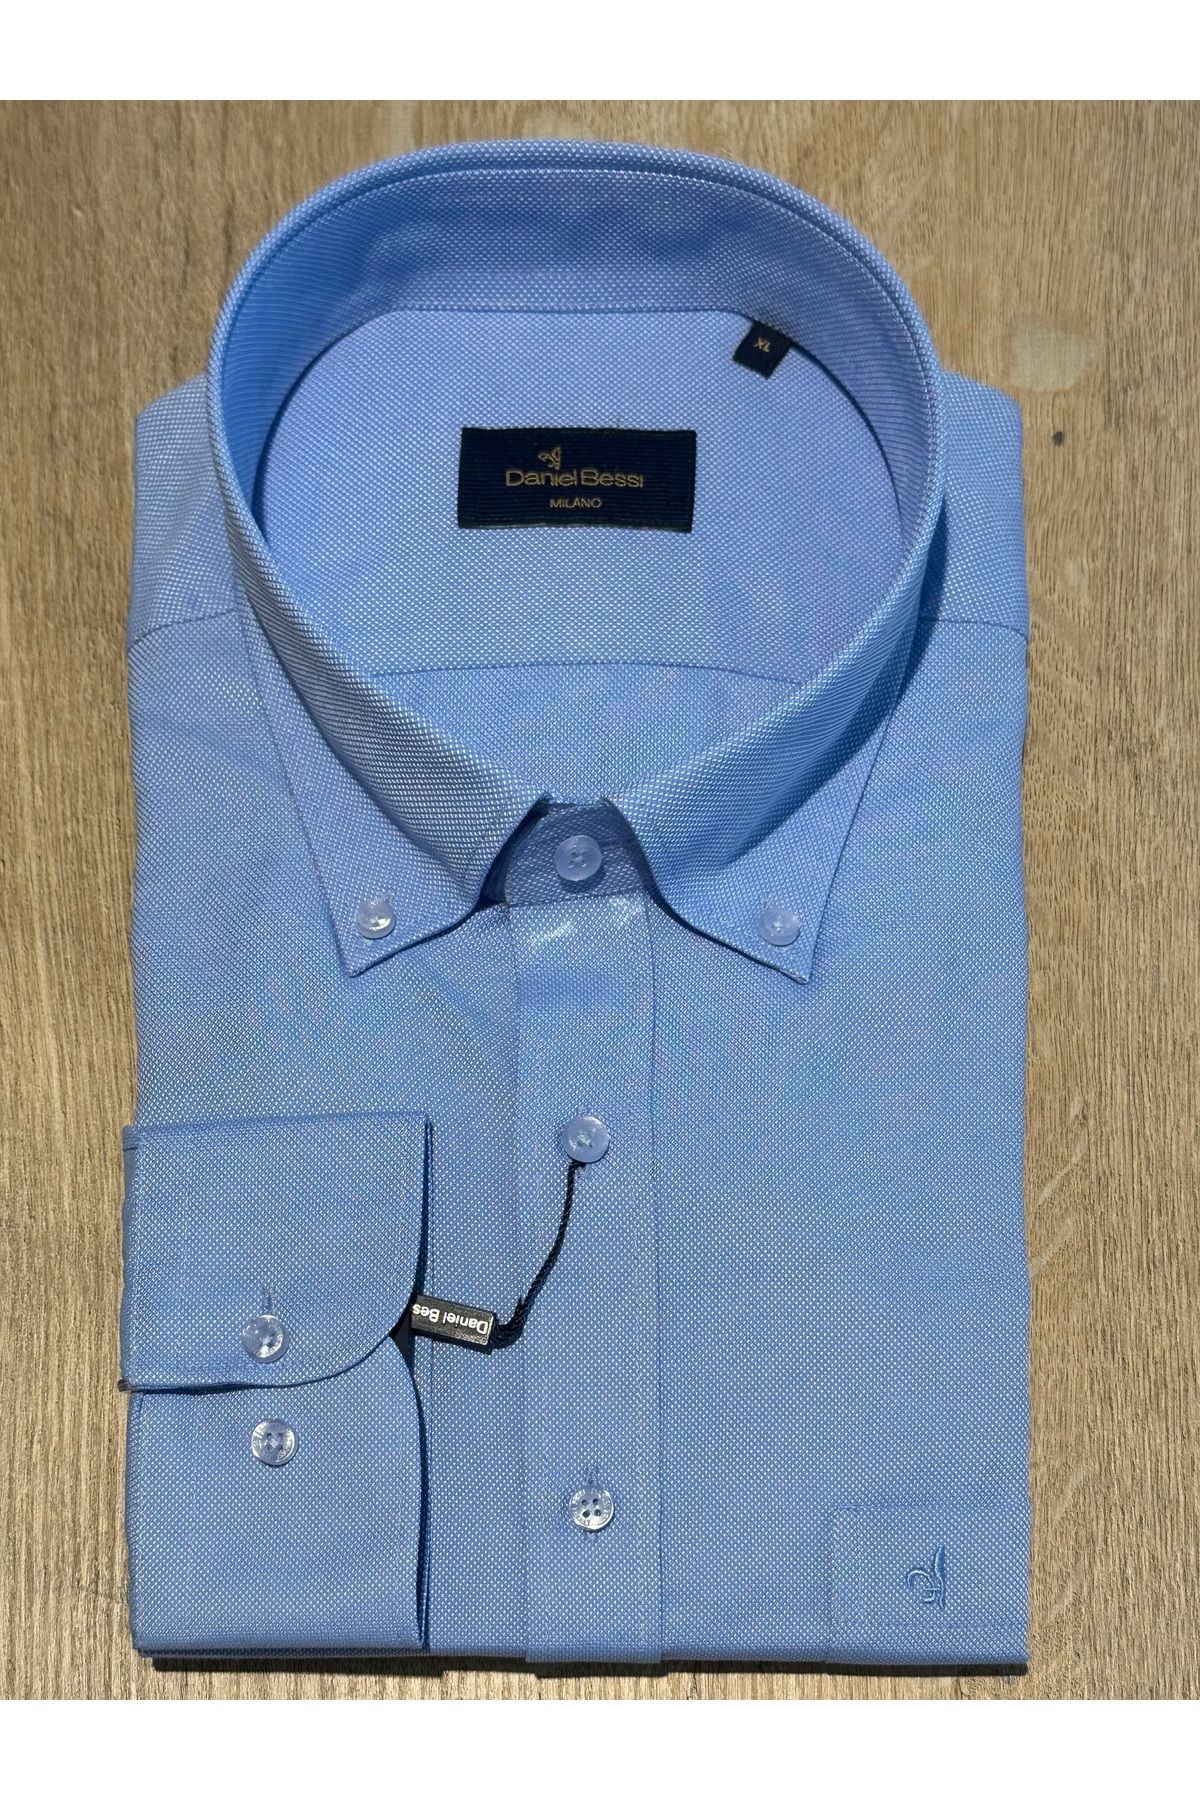 Daniel Bessi Uzun Kollu Regular Fit Oxford Kumaş Tek Cepli Klasik Casual Erkek Gömlek